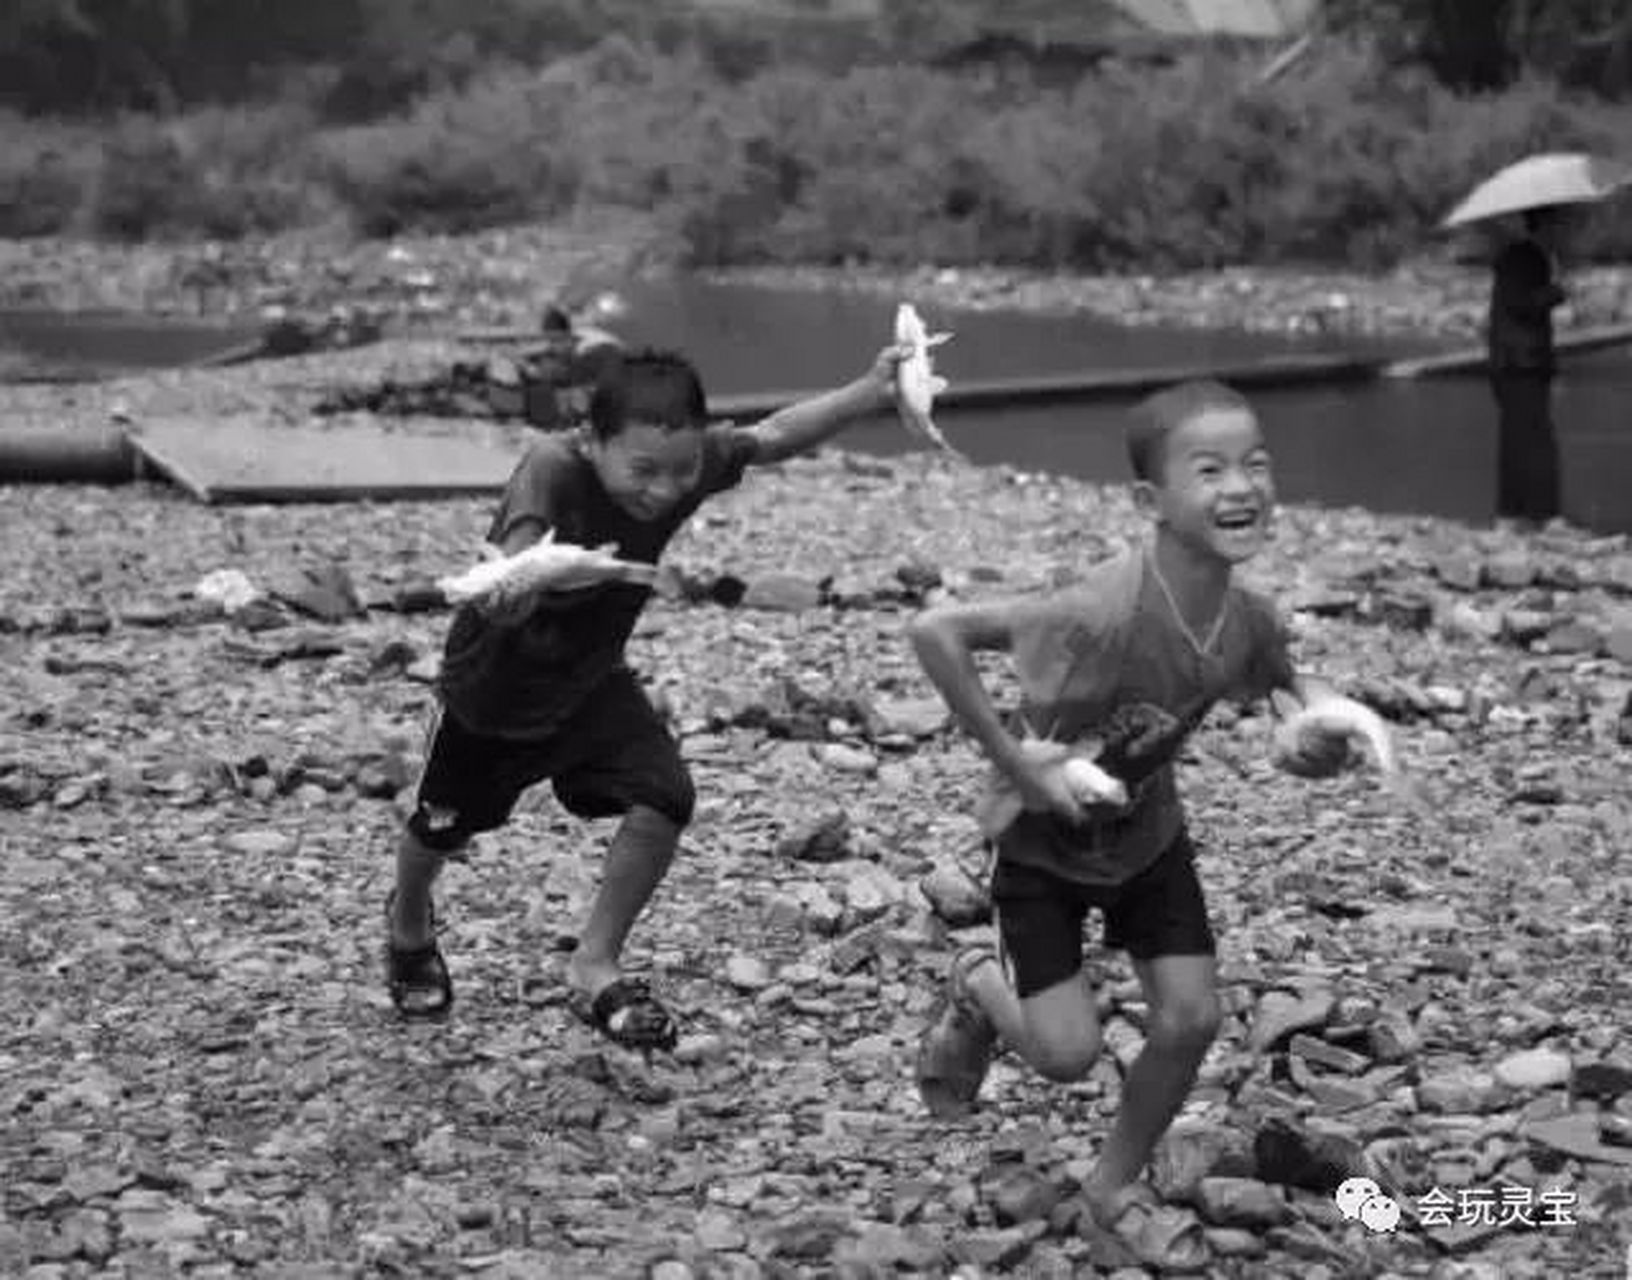 上世纪七十年代农村老照片:两个天真可爱的孩子捉到鱼后的喜悦情景